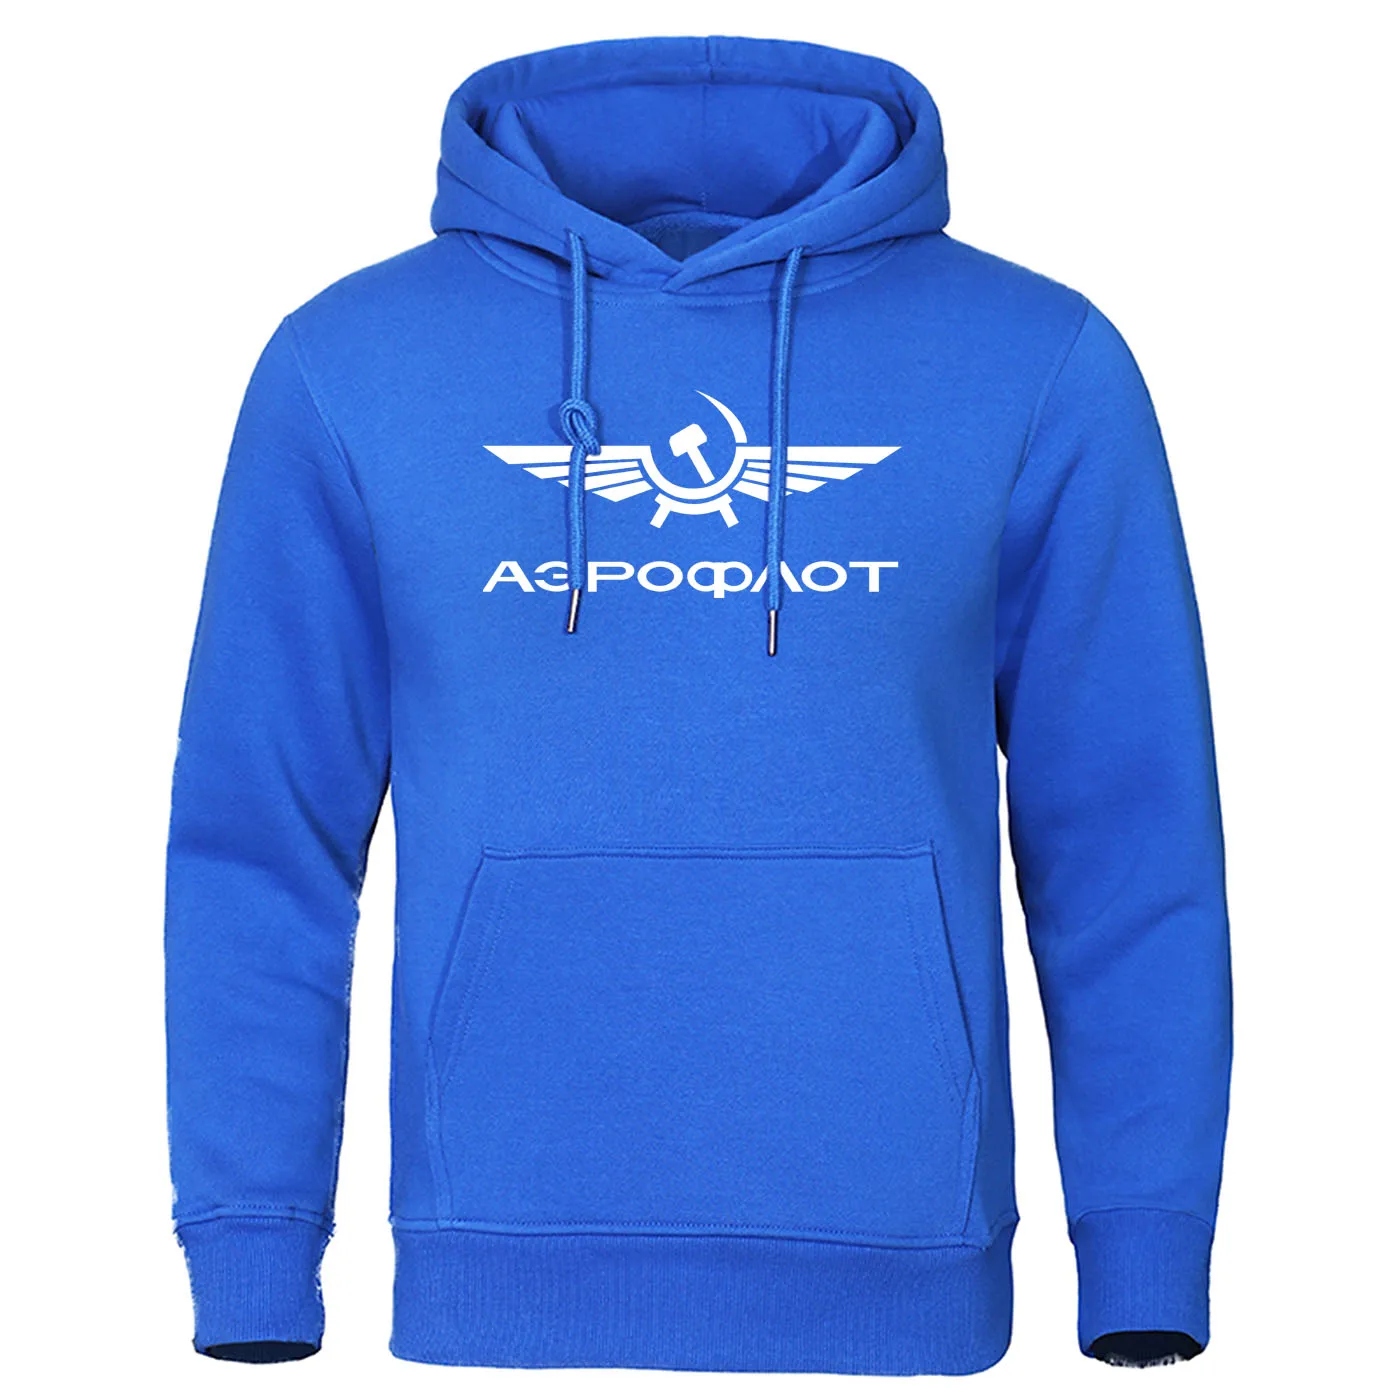 Осенняя Флисовая теплая Толстовка для мужчин s толстовки Стильные Аэрофлота CCCP Civil Aviation Russe Airforce пуловер модная мужская уличная одежда - Цвет: blue 5